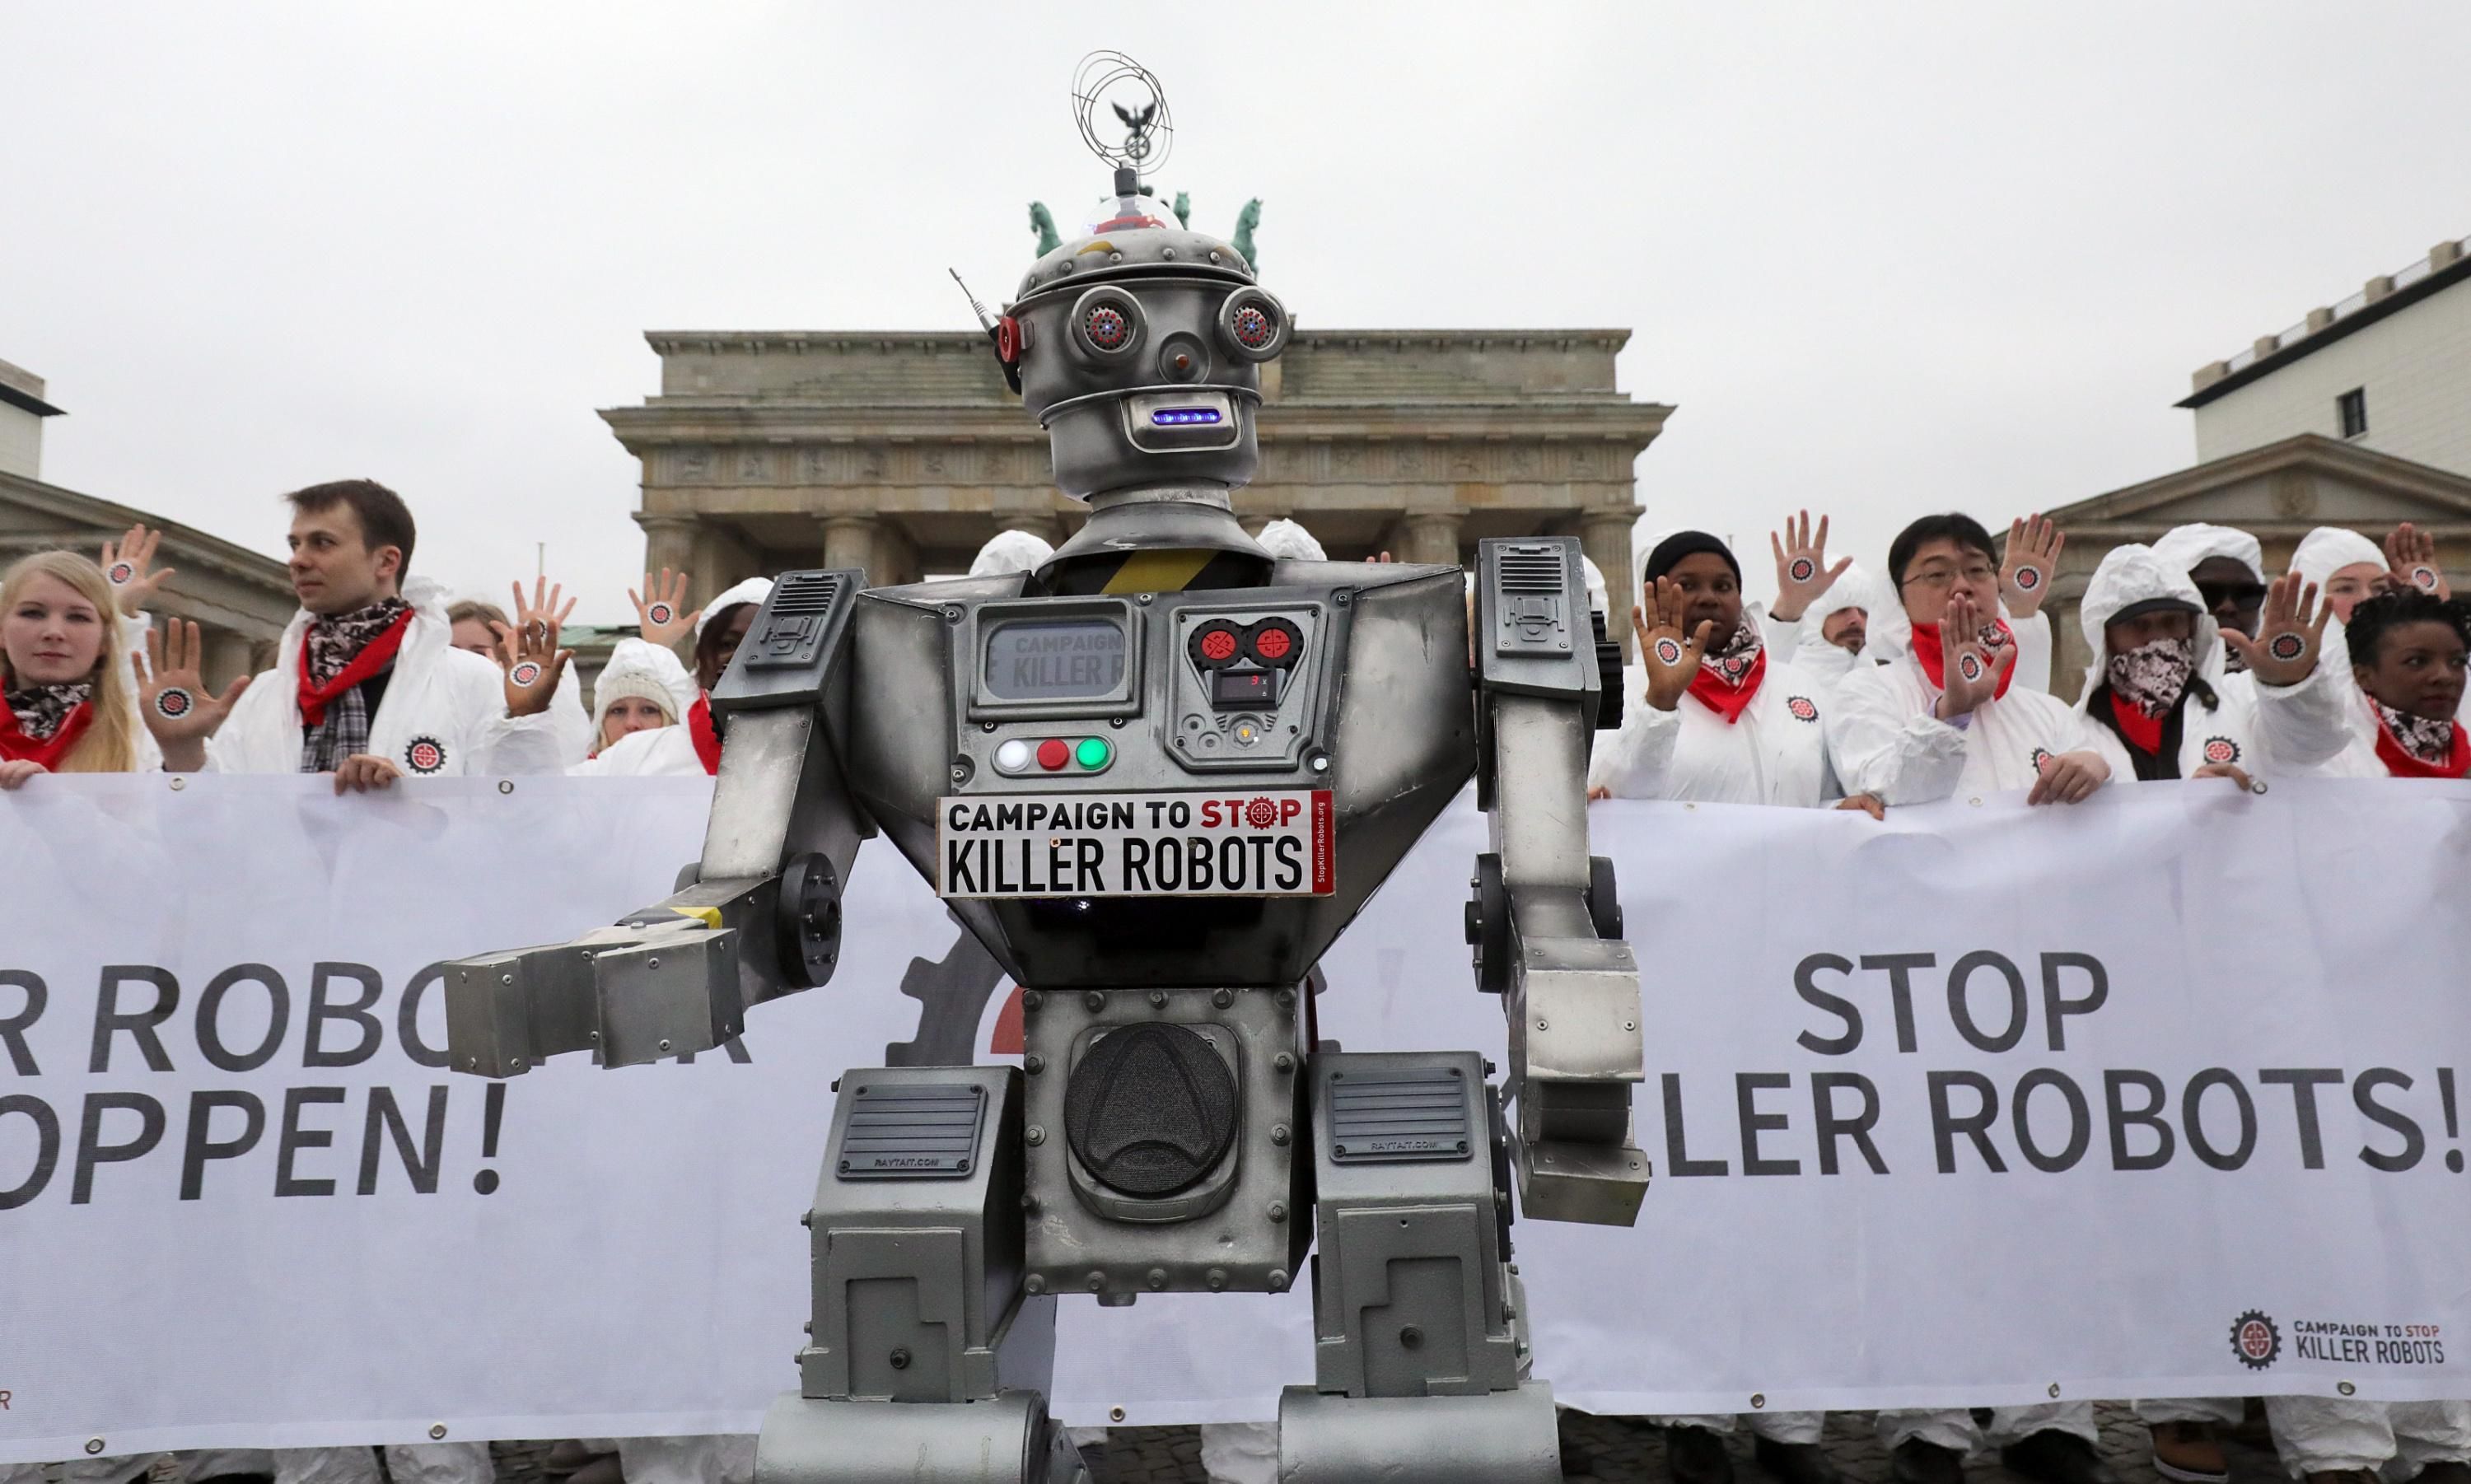 Demonstrators protest killer robots in Berlin.